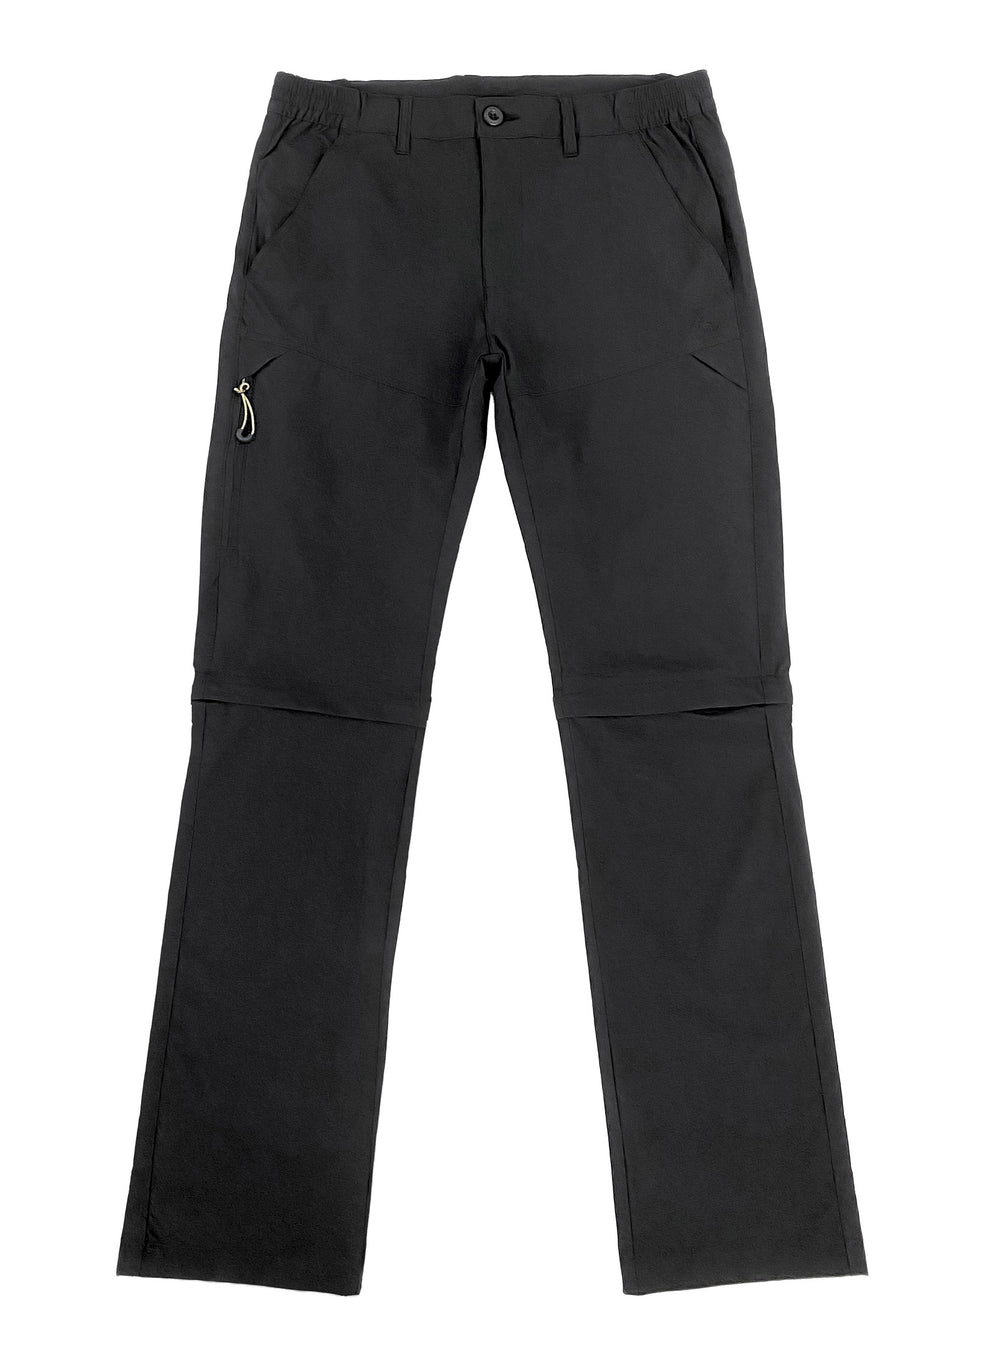 Verve, Pants & Jumpsuits, Verve Capris Black Size